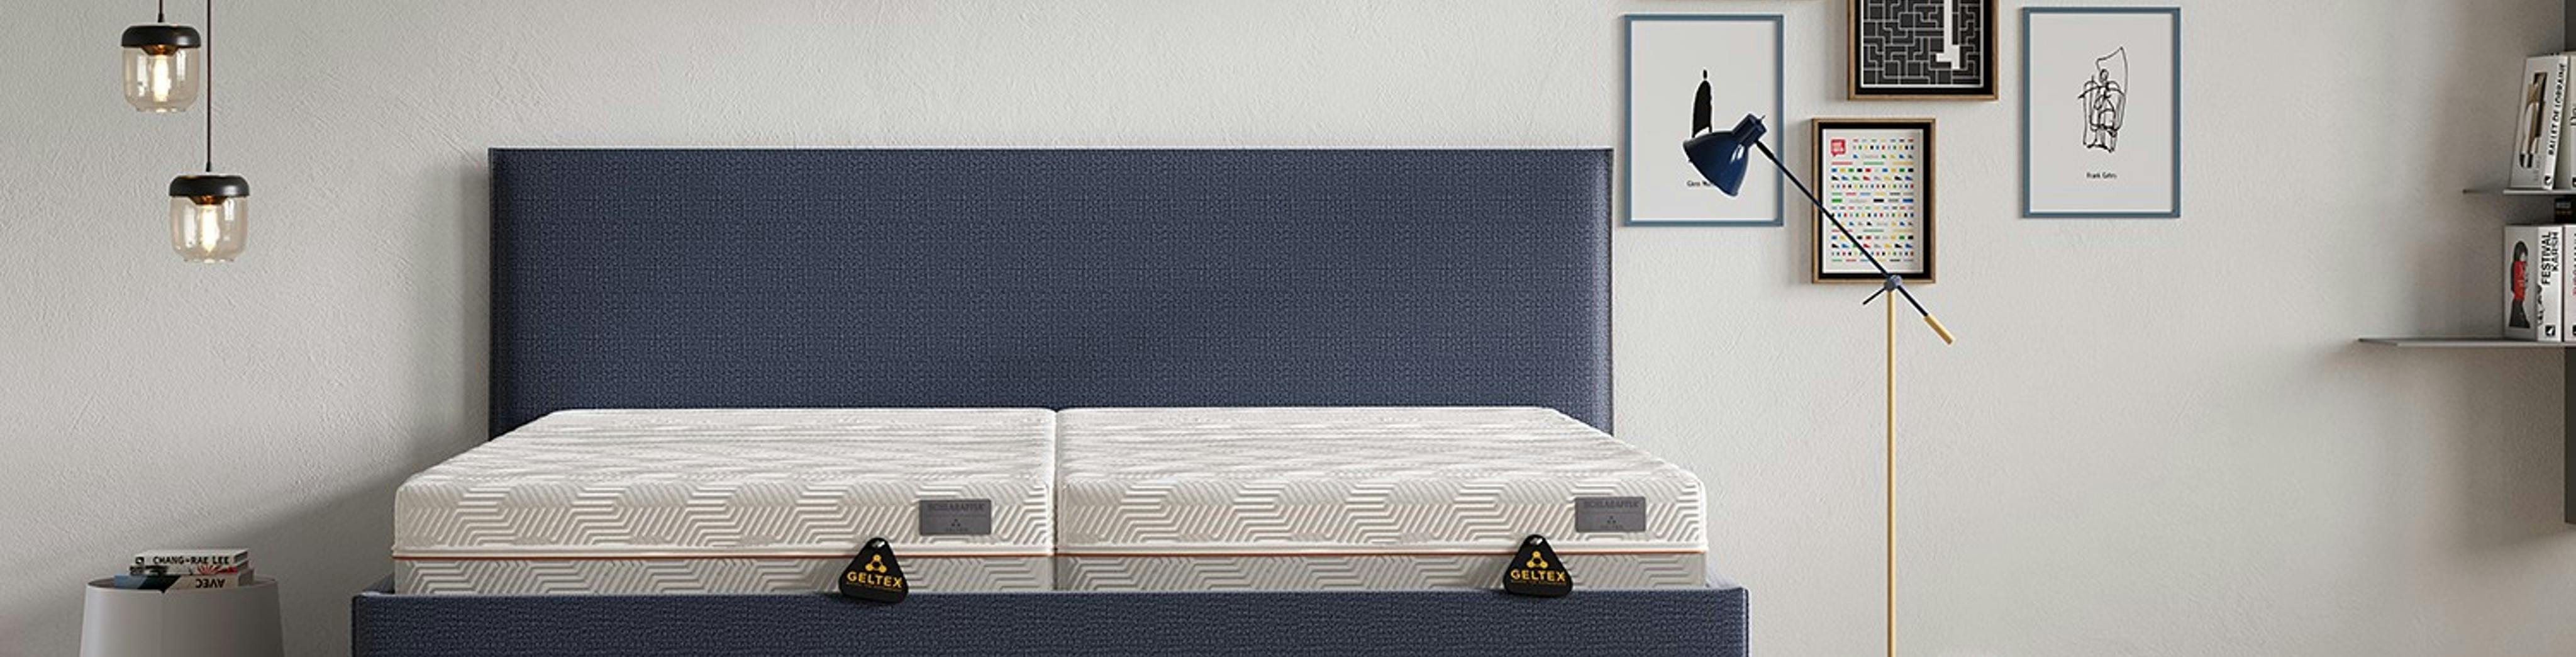 Schlafzimmer mit Pendellampen, Wandbildern und blaugrauem Polsterbett mit zwei Gelmatratzen